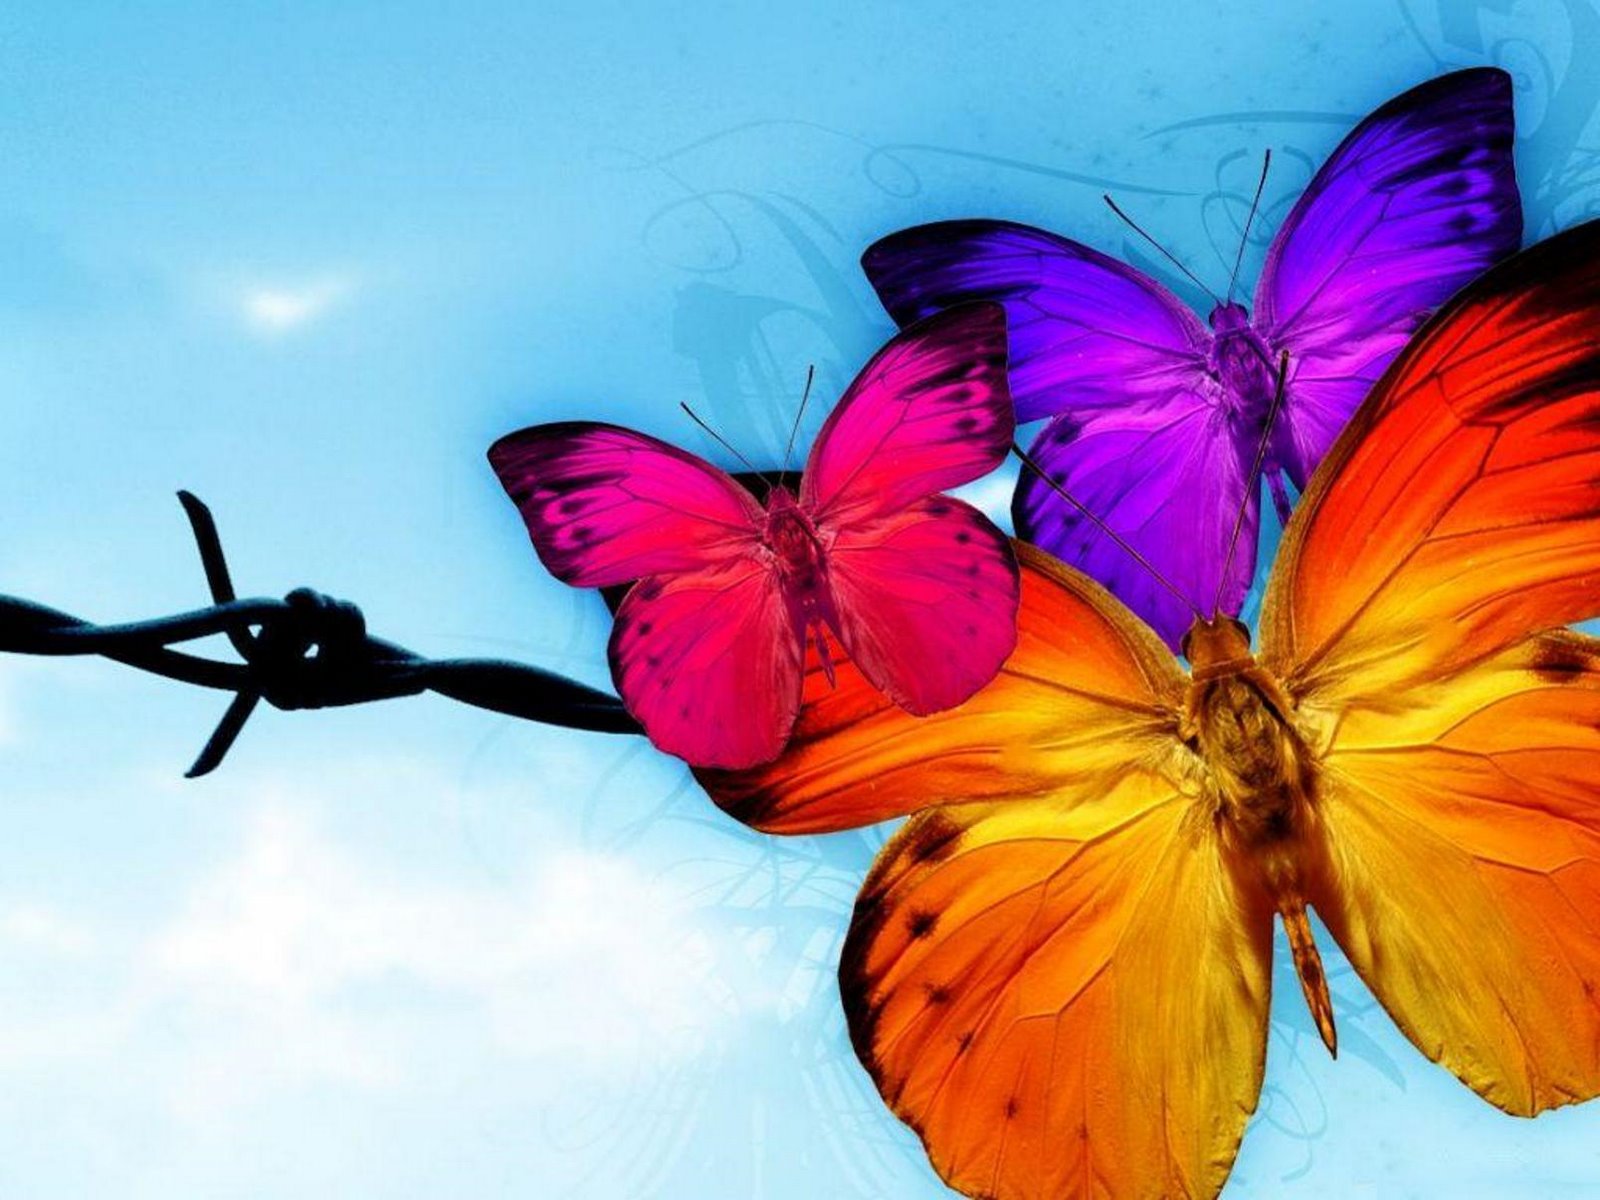   best top desktop butterflies wallpaper hd butterfly wallpaper 35jpg 1600x1200